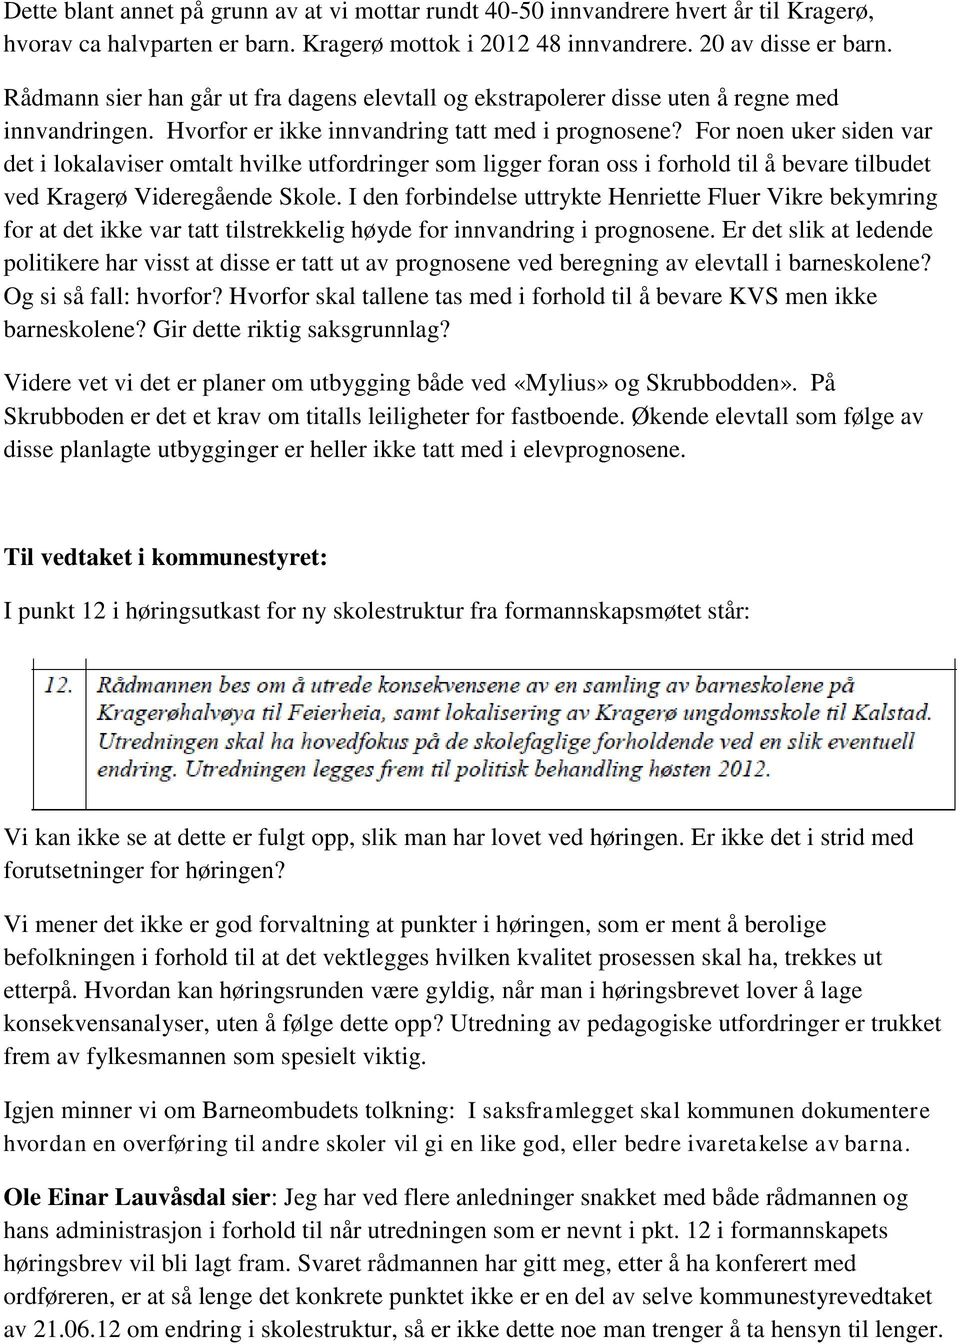 For noen uker siden var det i lokalaviser omtalt hvilke utfordringer som ligger foran oss i forhold til å bevare tilbudet ved Kragerø Videregående Skole.